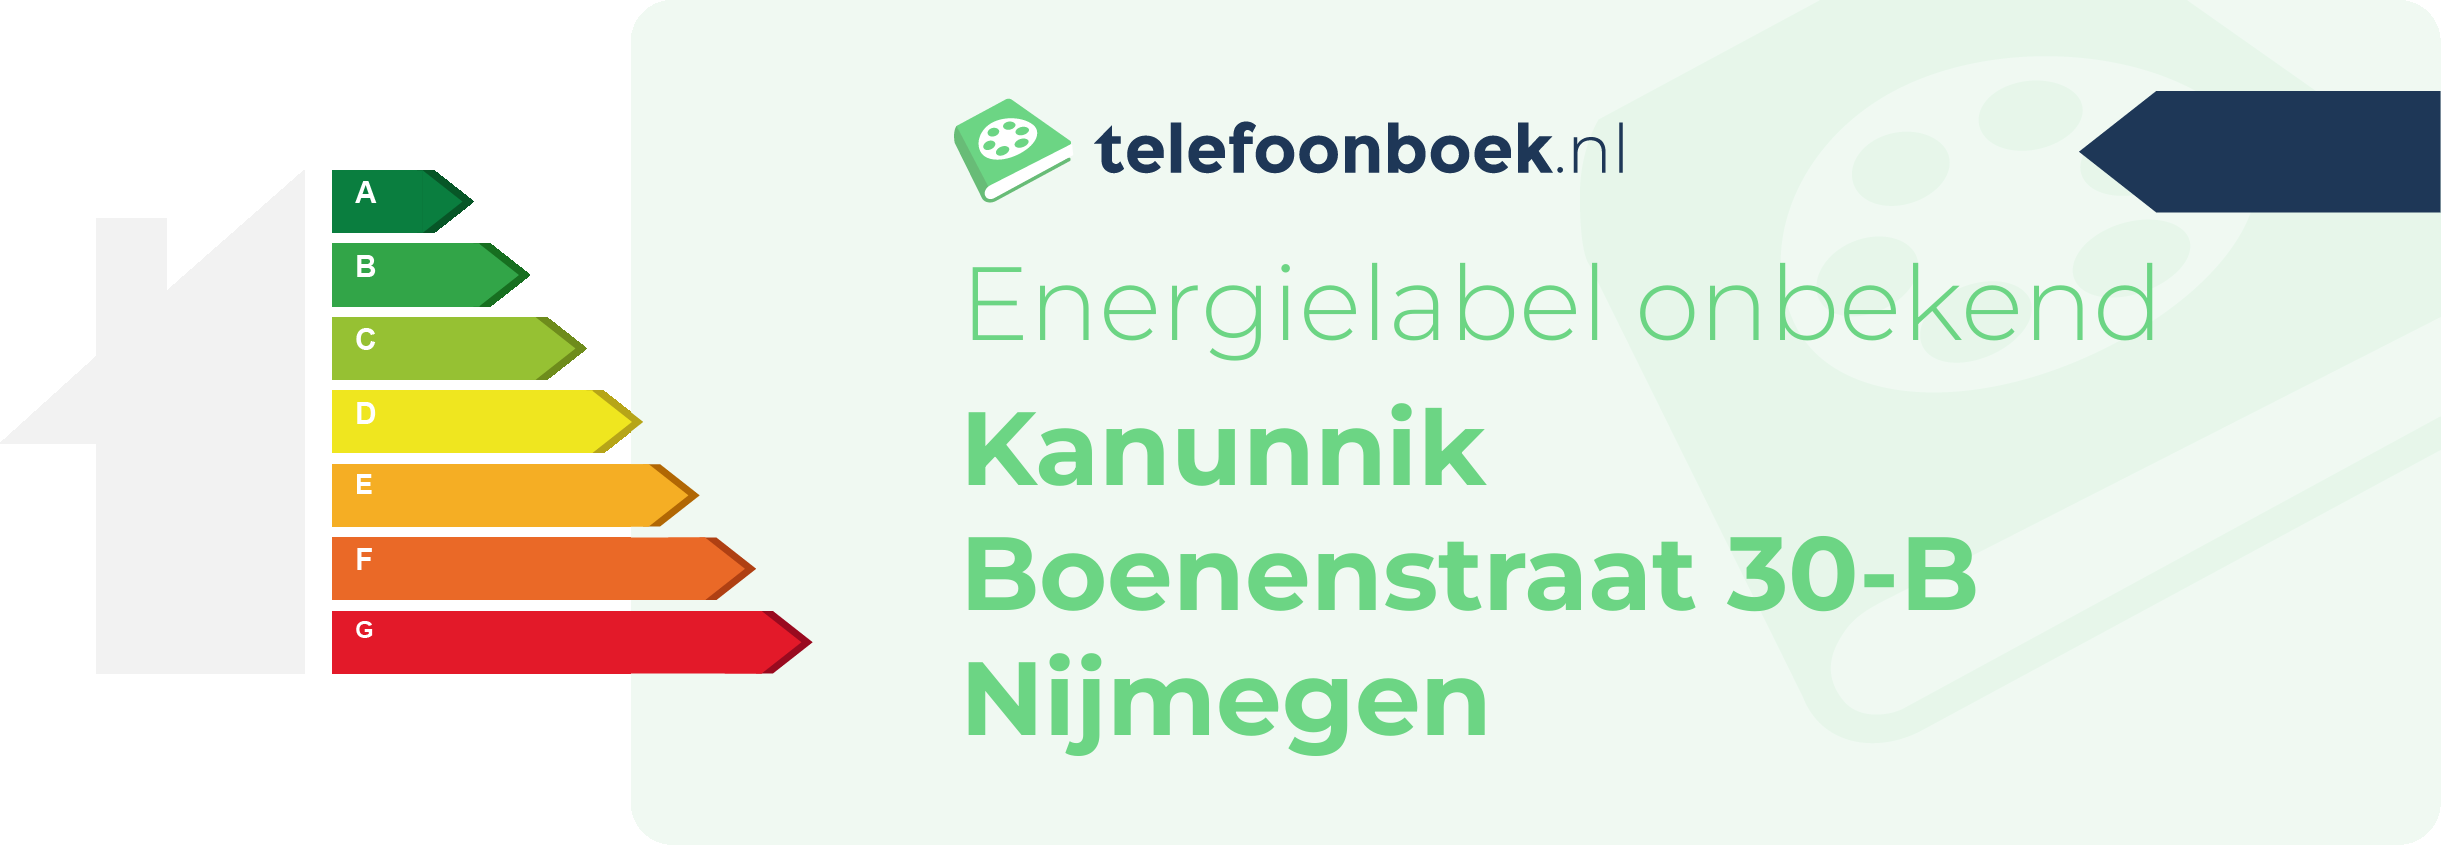 Energielabel Kanunnik Boenenstraat 30-B Nijmegen